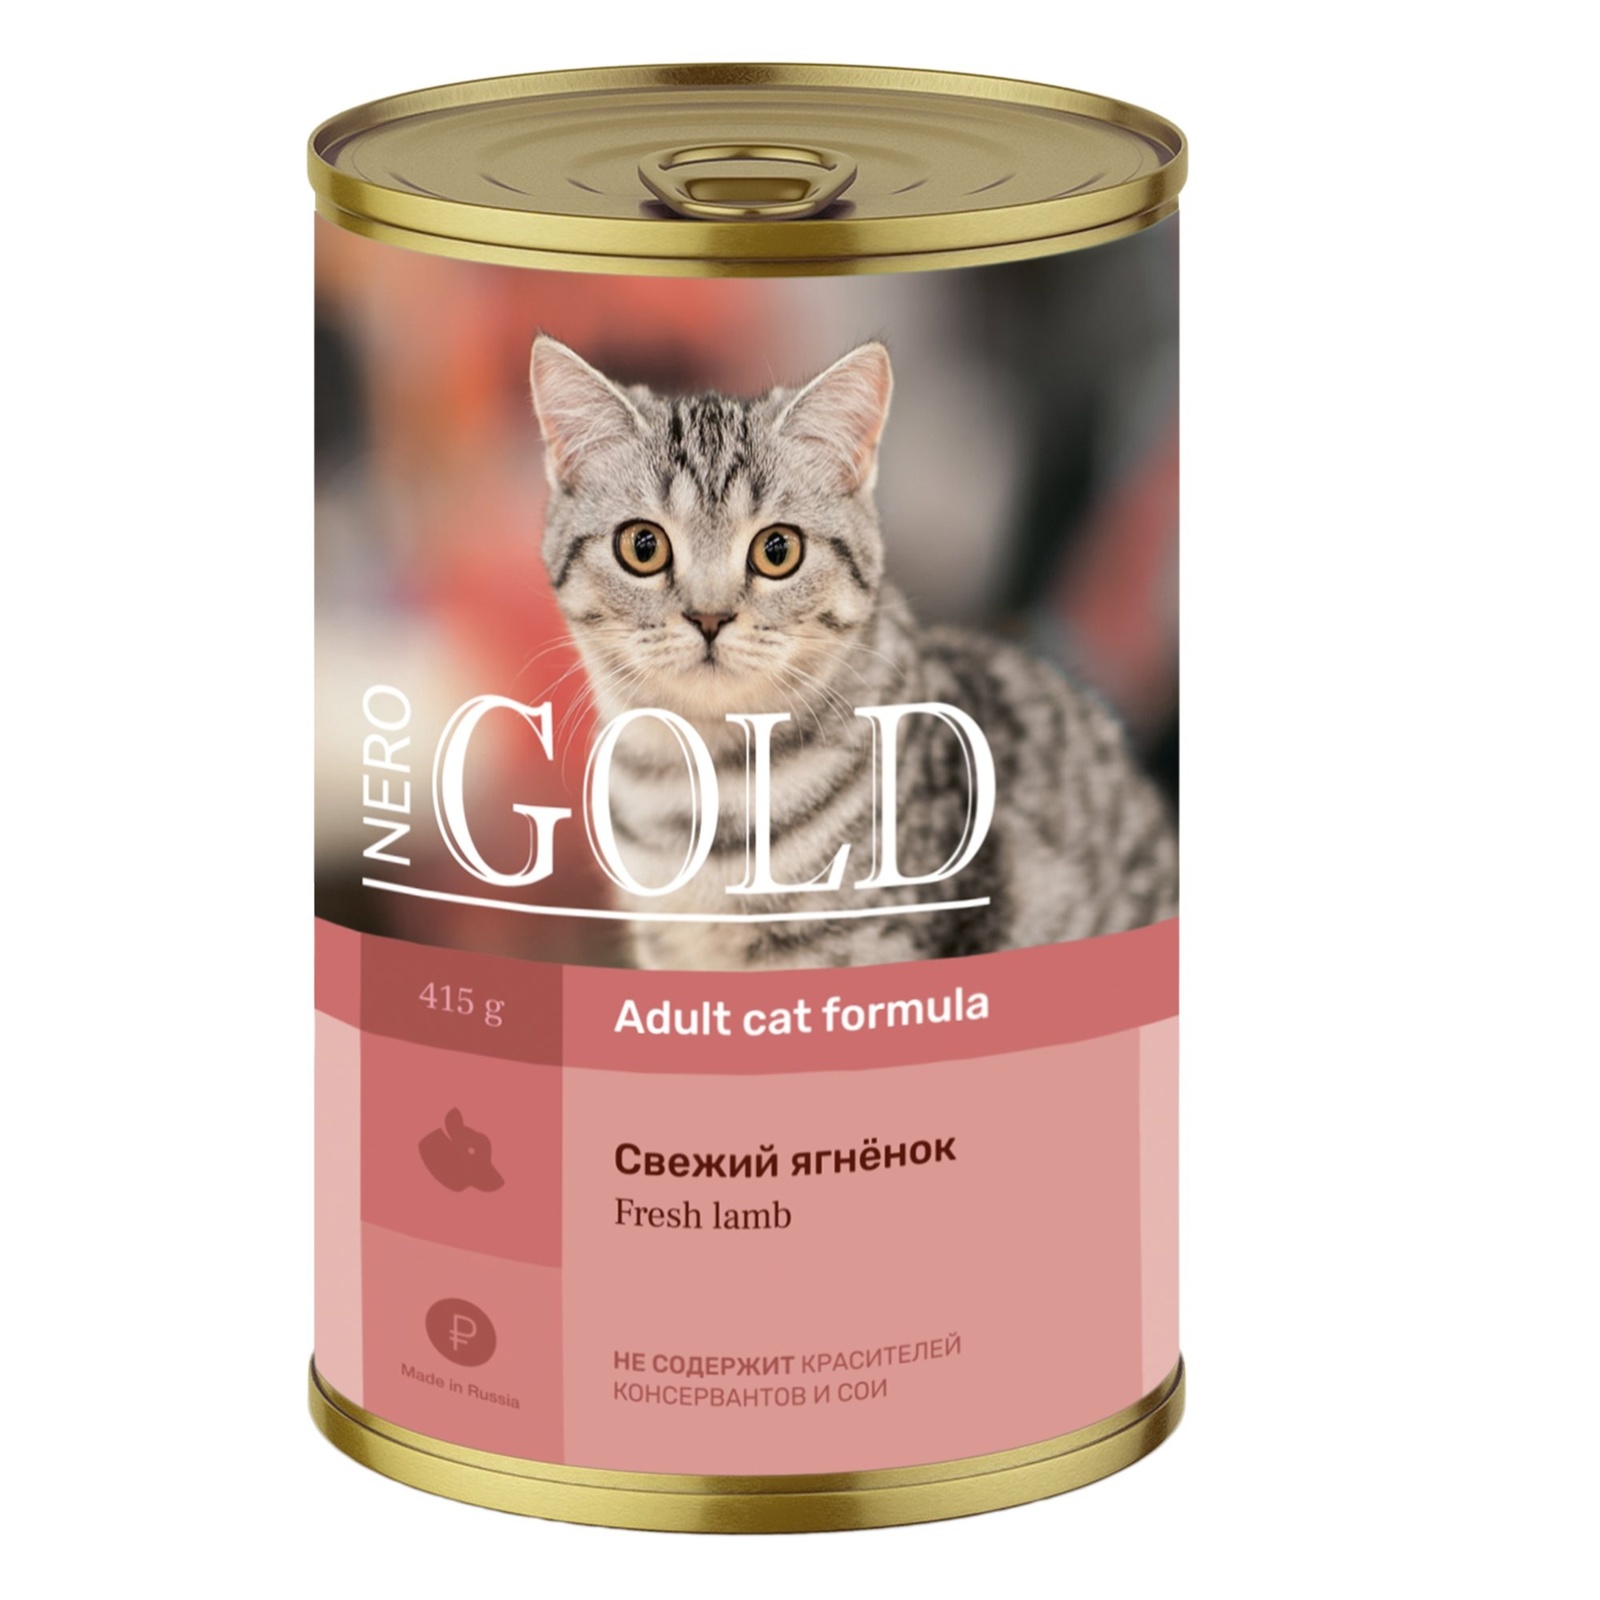 Nero Gold консервы Nero Gold консервы консервы для кошек Свежий ягненок (415 г) dr clauders консервы для кошек с сердцем 0 415 кг 21631 10 шт